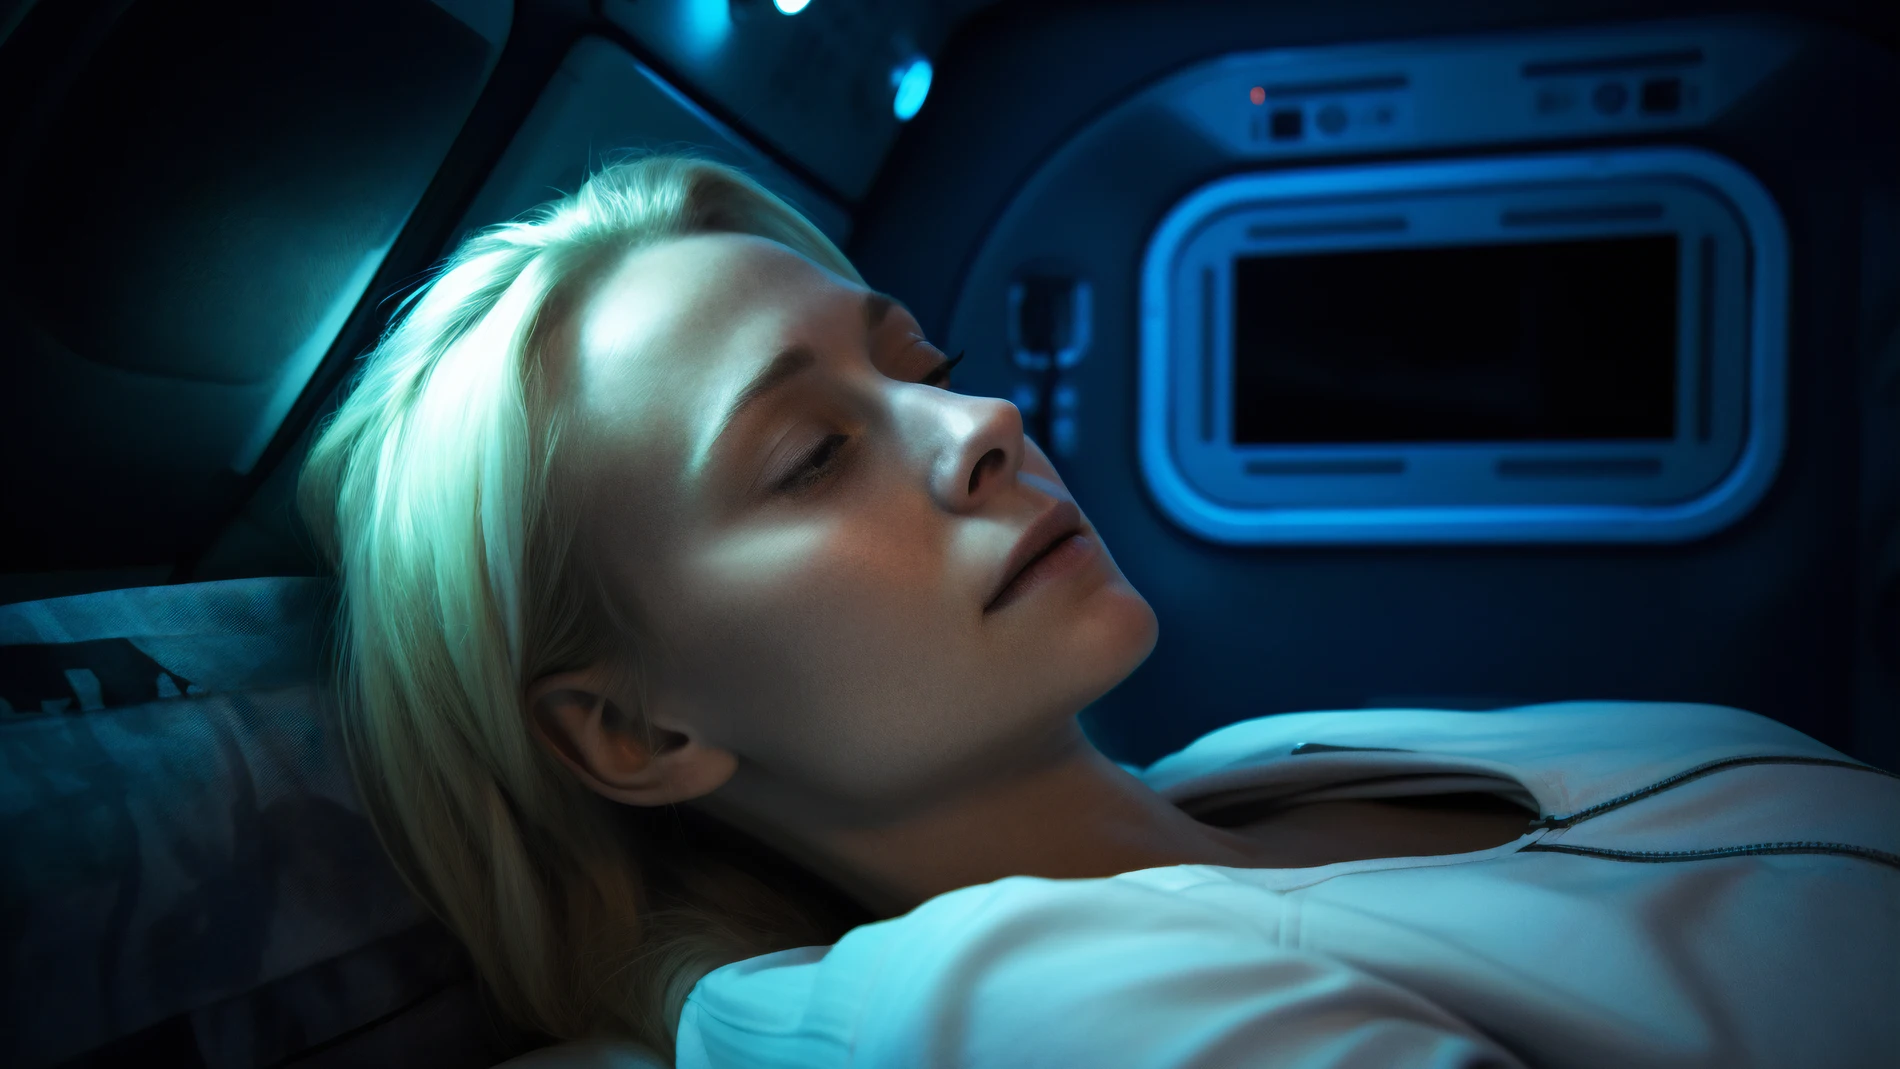 capsula hibernacion sueño artificial viajes planetas 